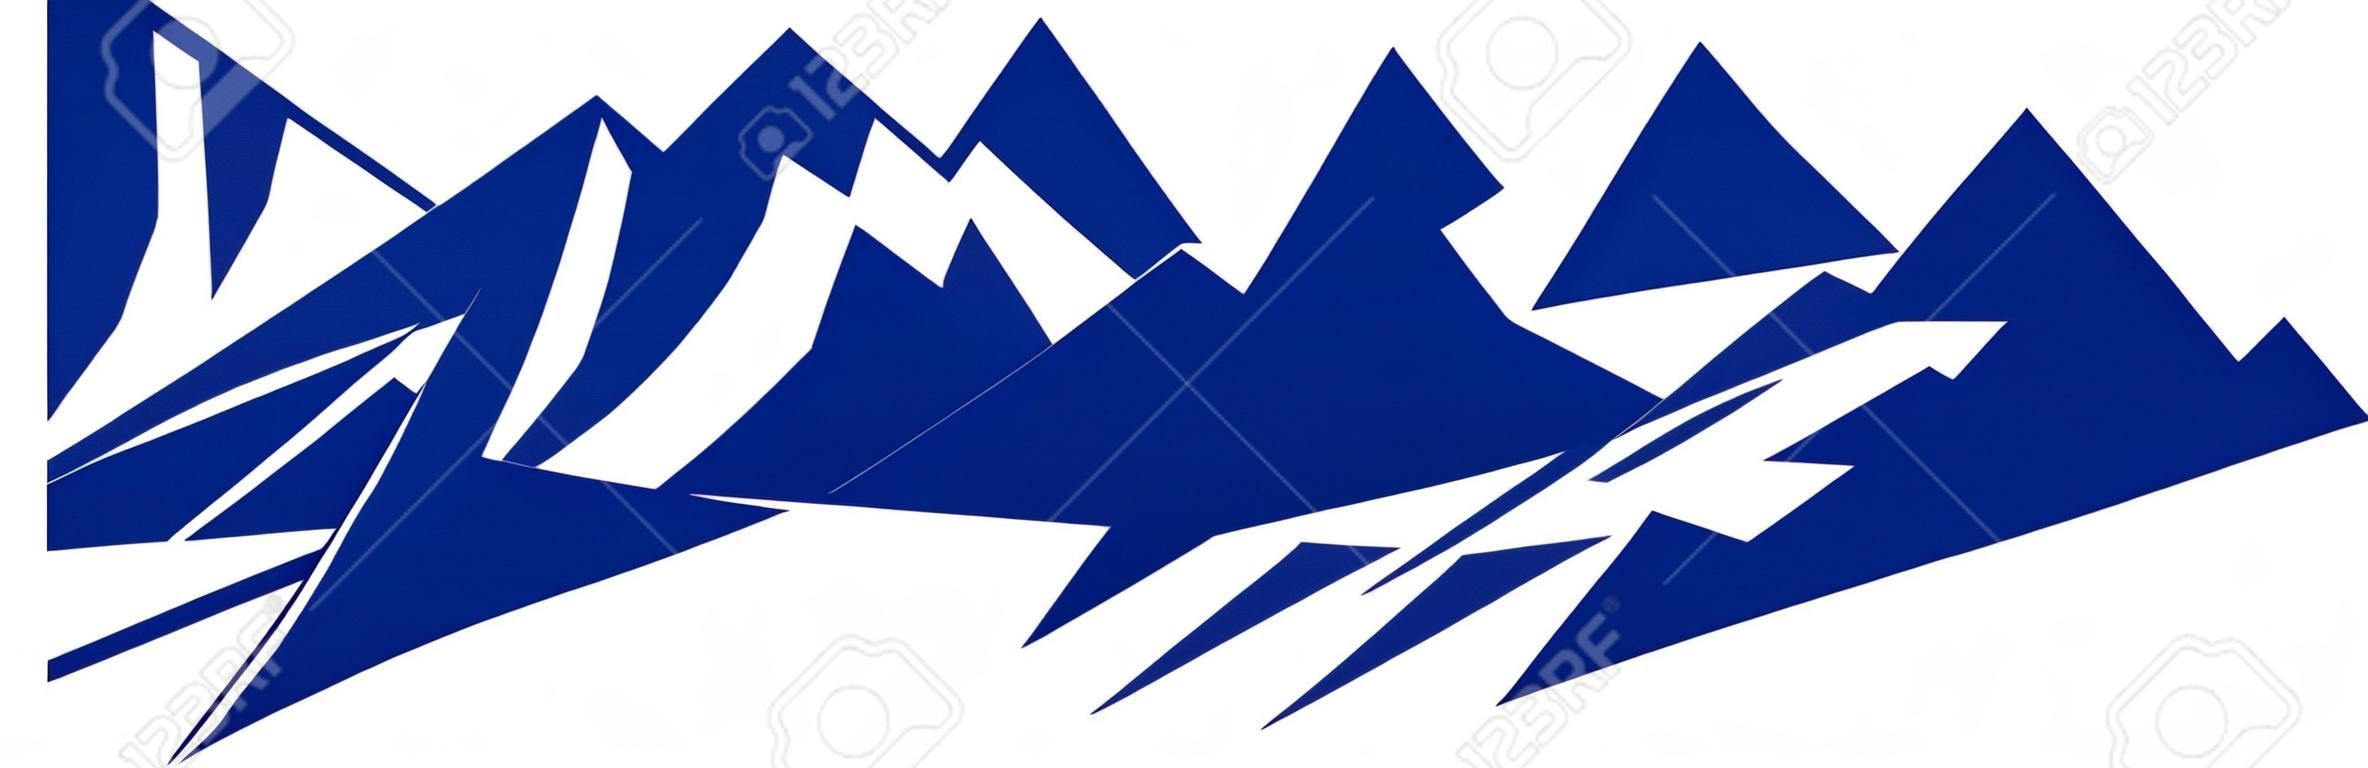 Montaña azul silueta con tres picos sobre fondo blanco - vector